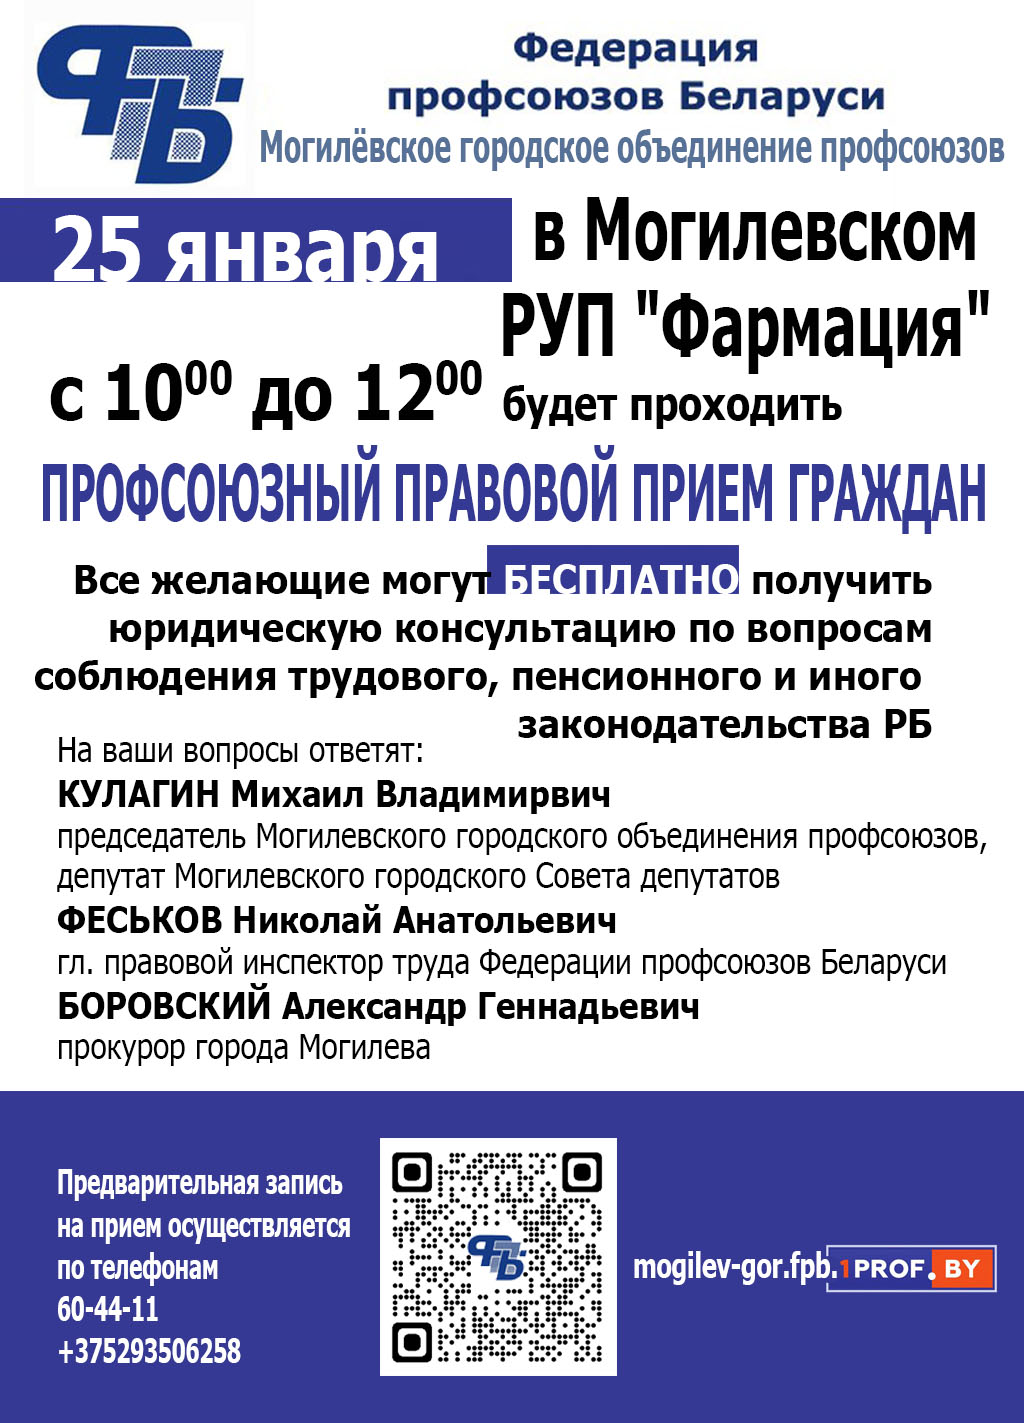 Профсоюзный прием граждан пройдет в Могилеве 25 января